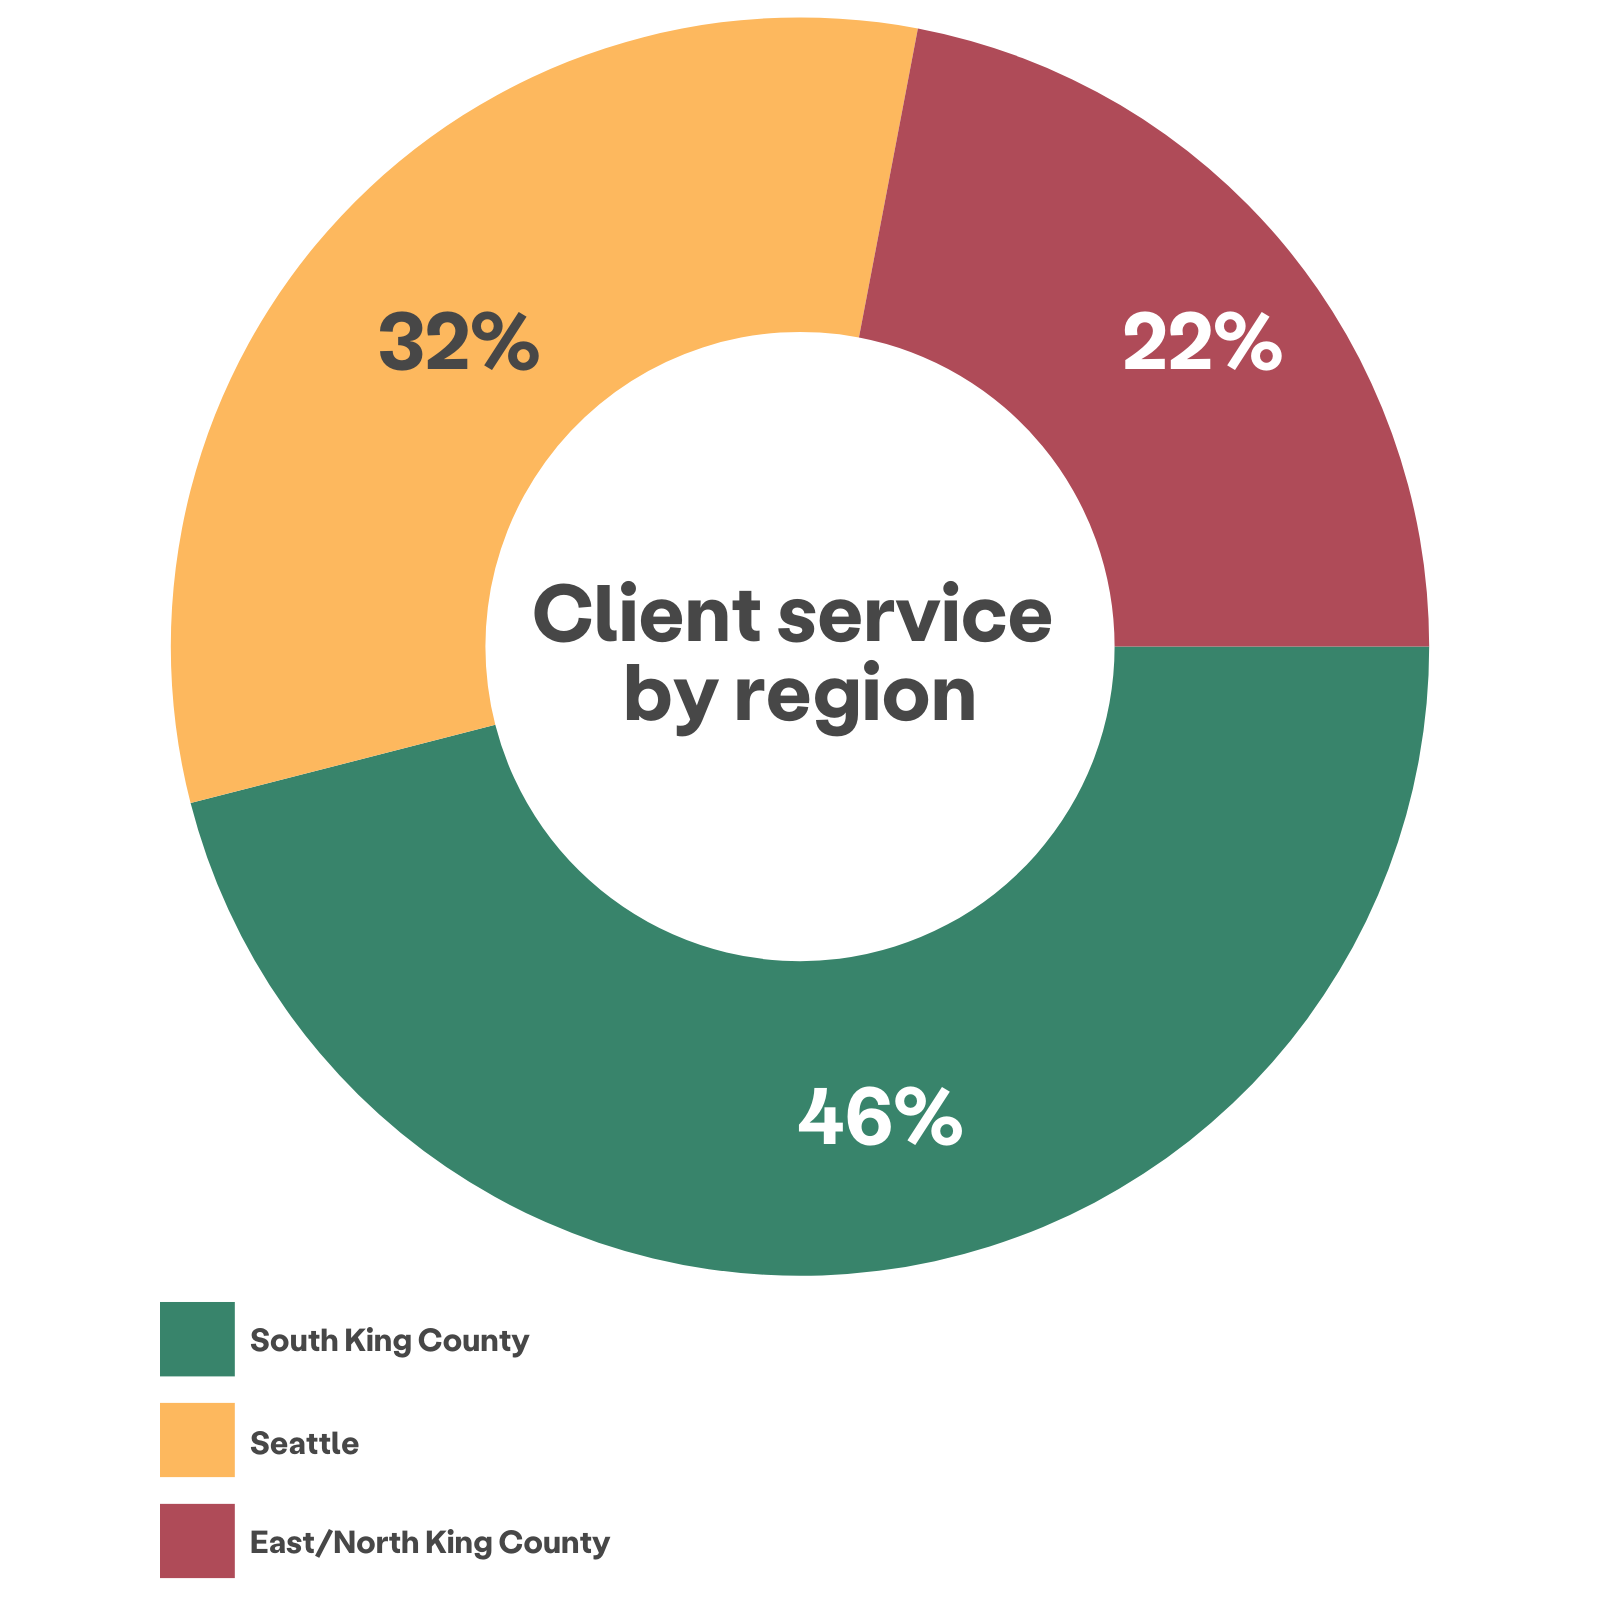 Gráfico circular de servicio al cliente por región que muestra 46% atendidos desde el sur del condado de King, 32% desde Seattle, 22% desde el este/norte del condado de King